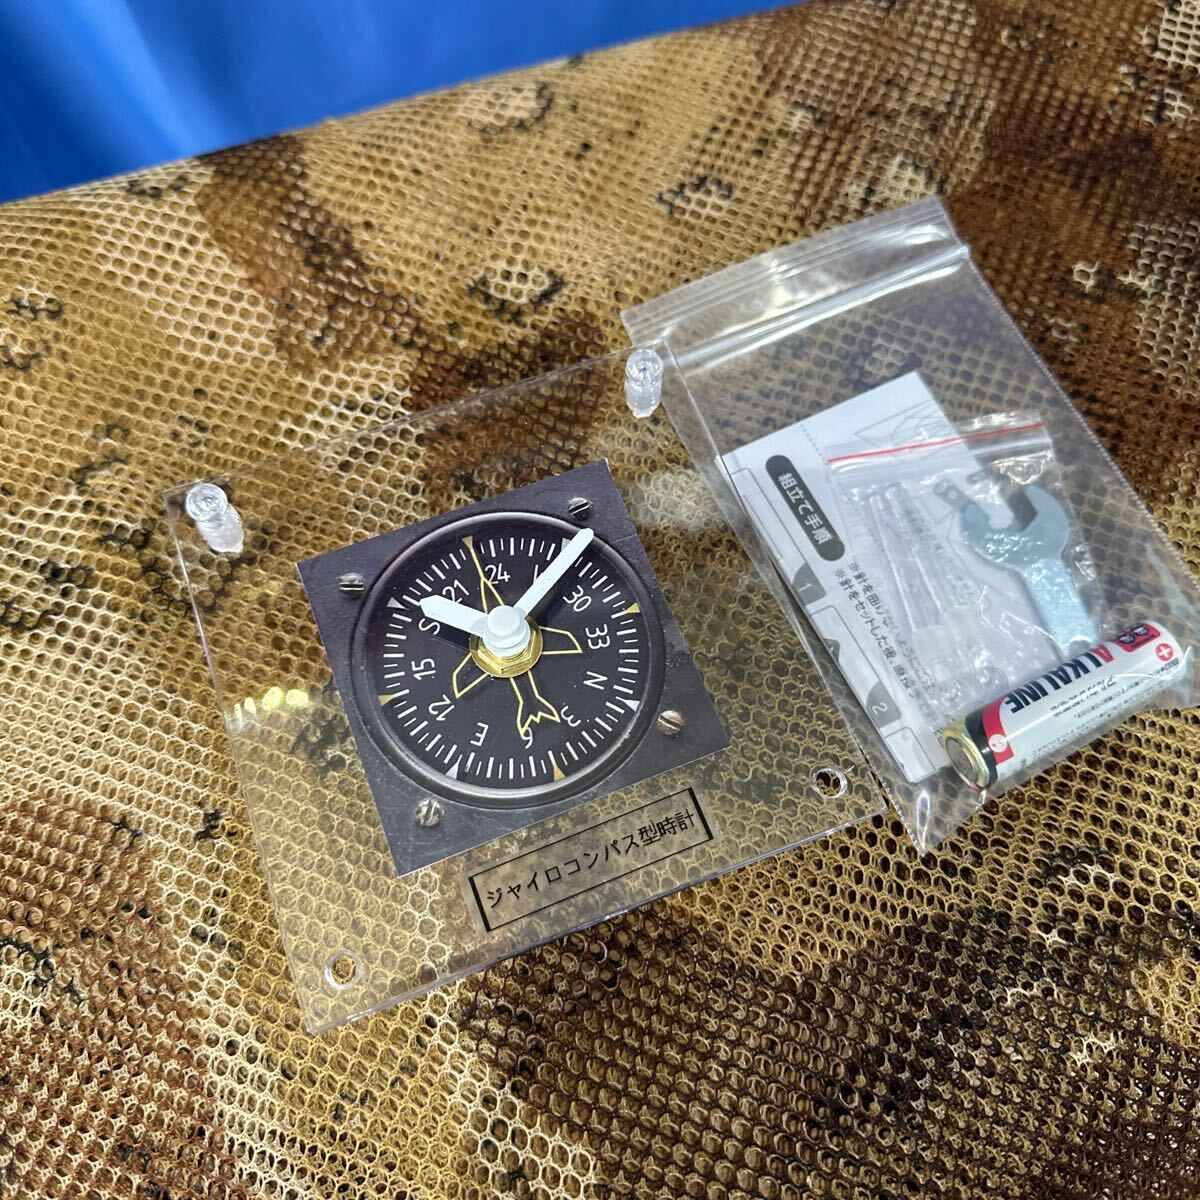 ジャイロコンパス(定針儀)型時計インテリアの画像4